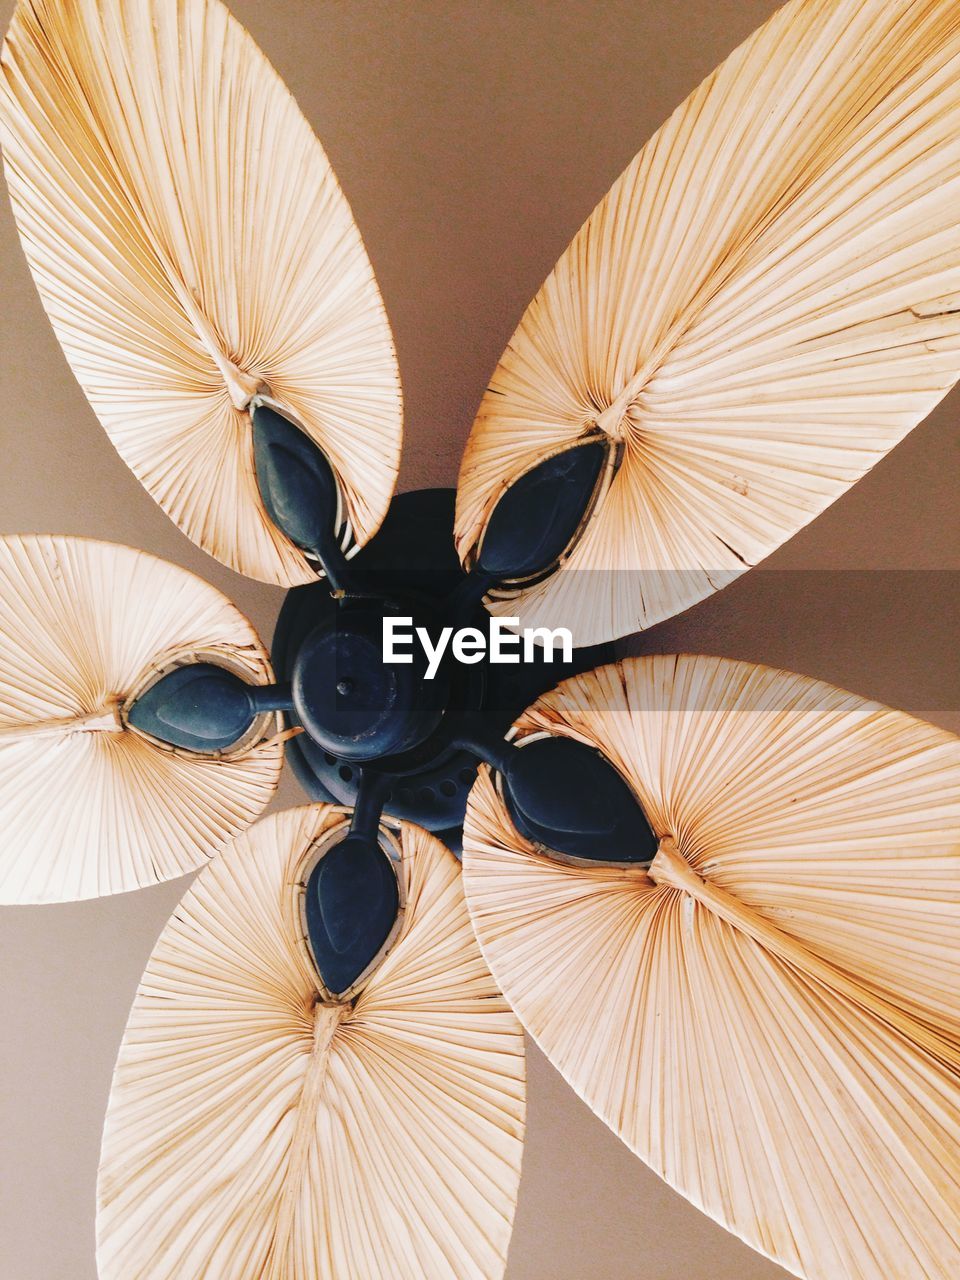 Eco style ceiling fan